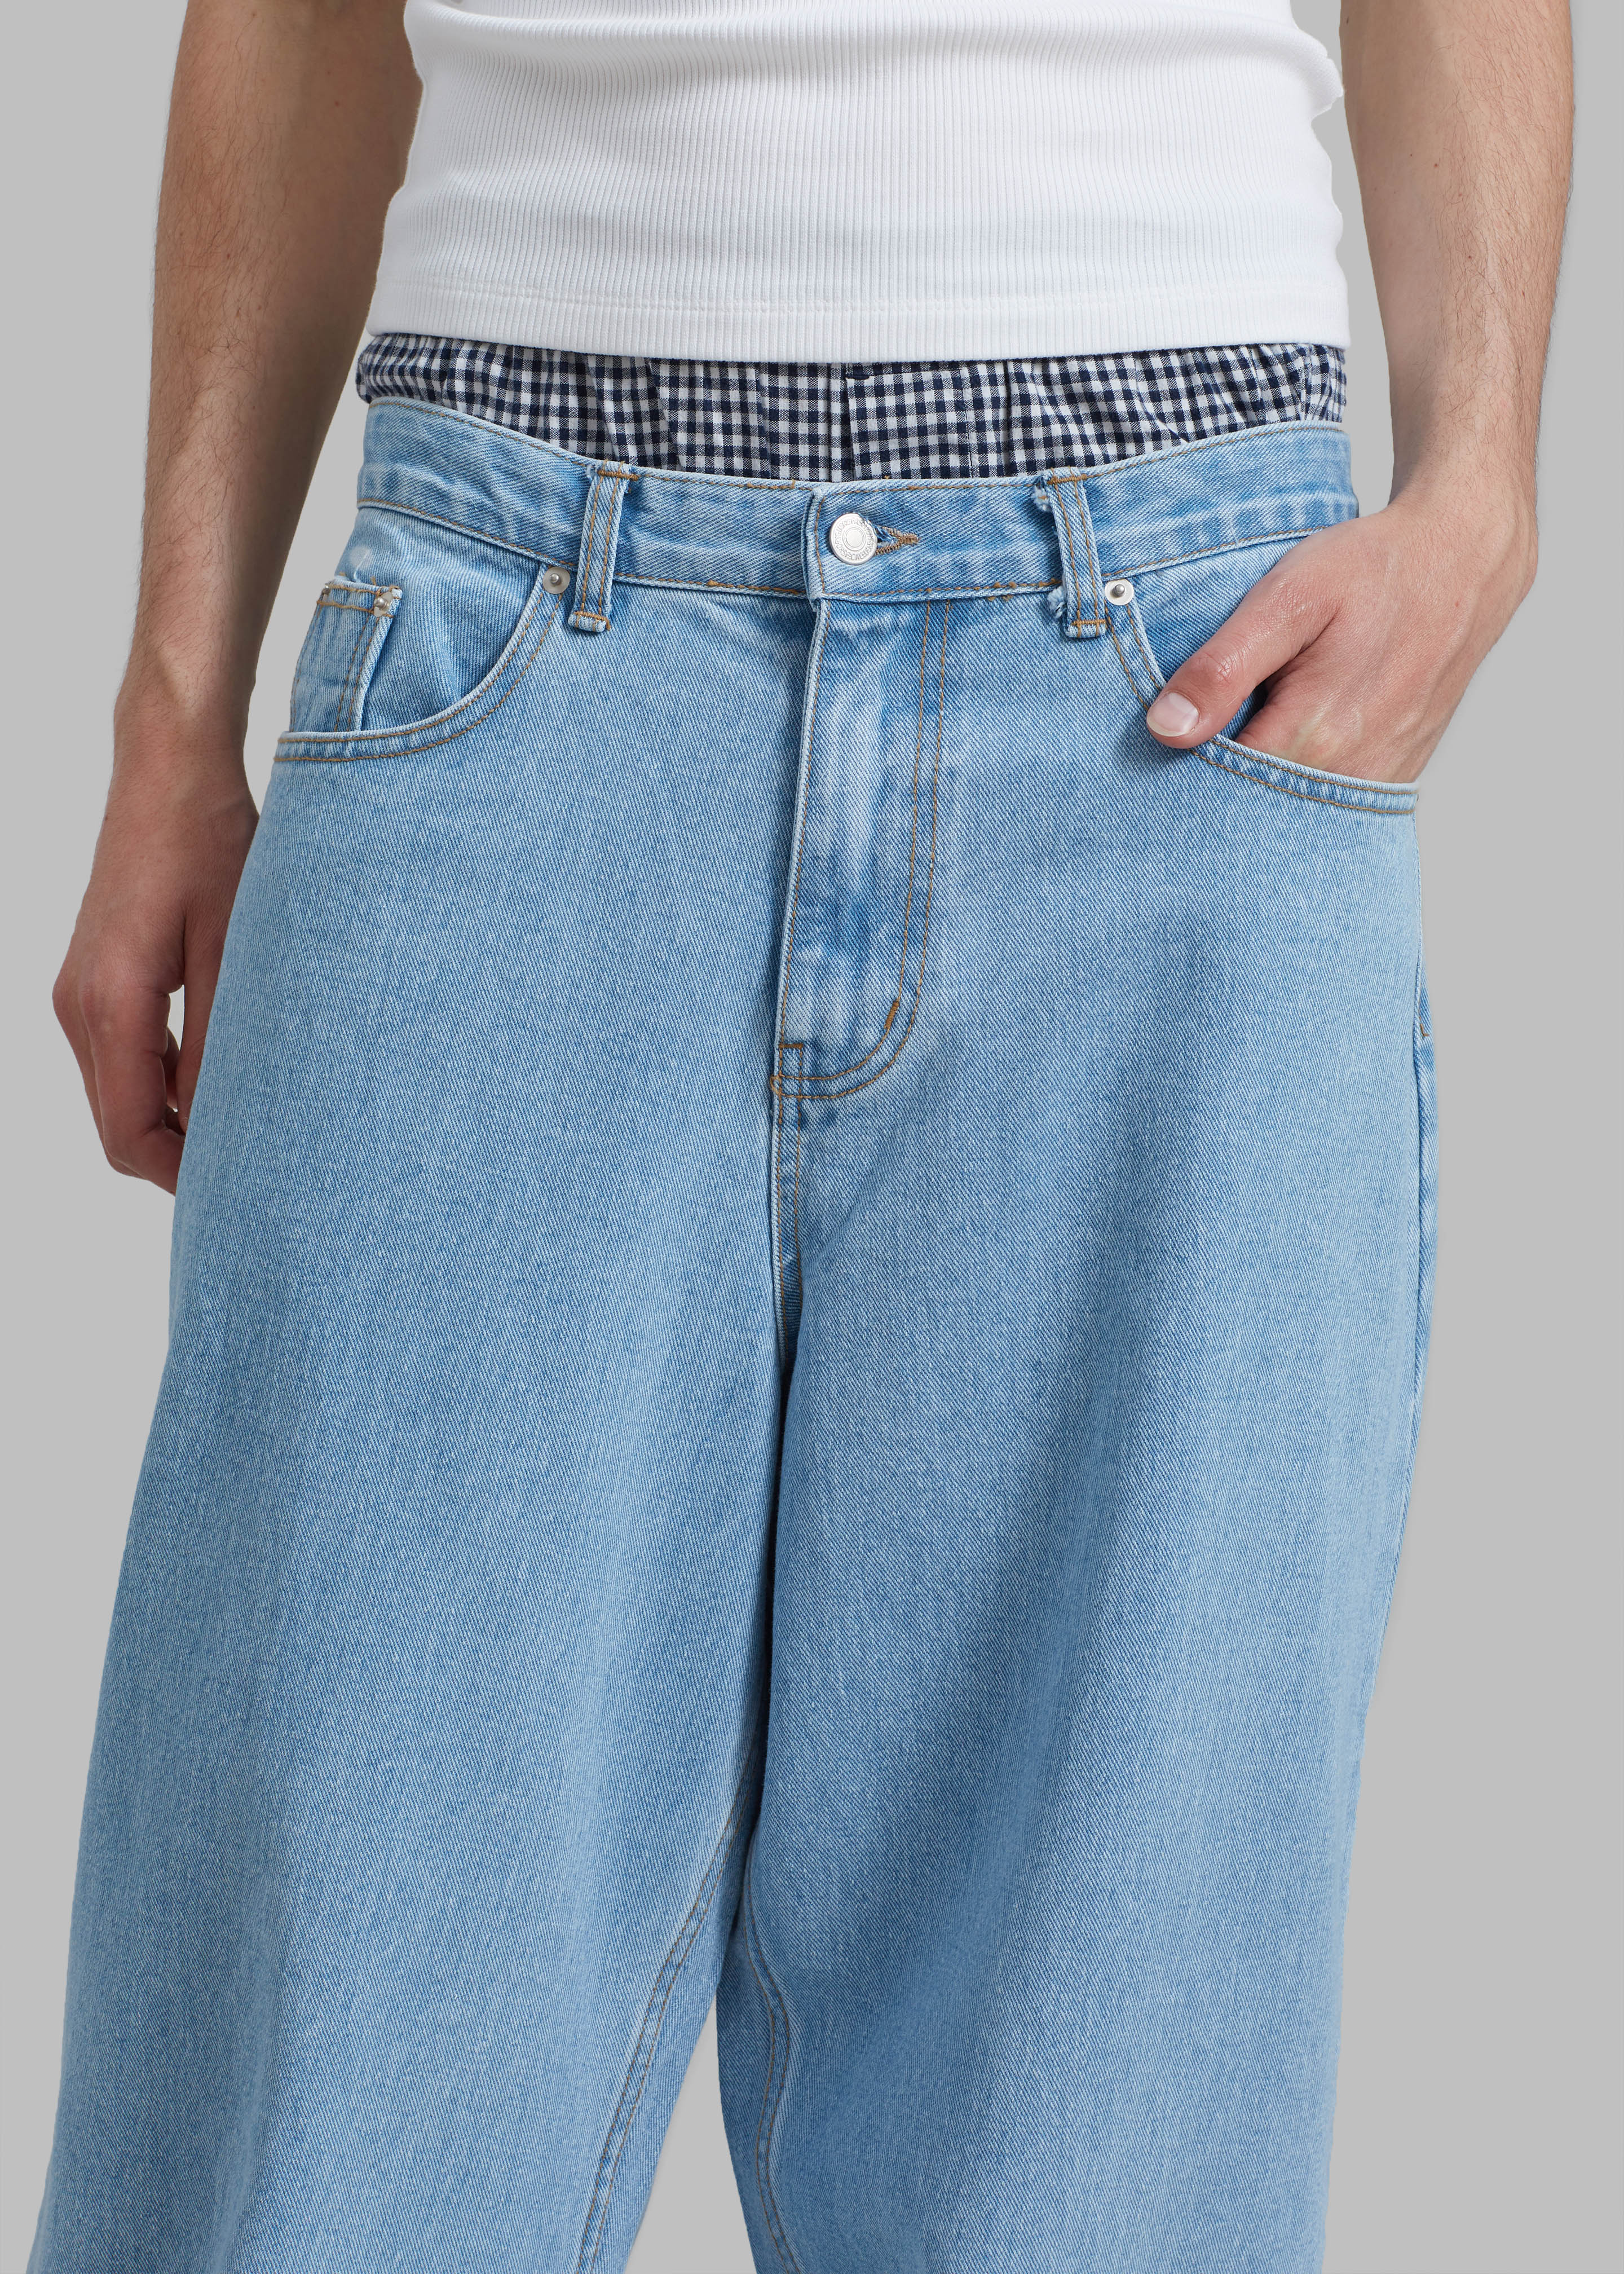 Connor Jeans - Worn Wash - 6